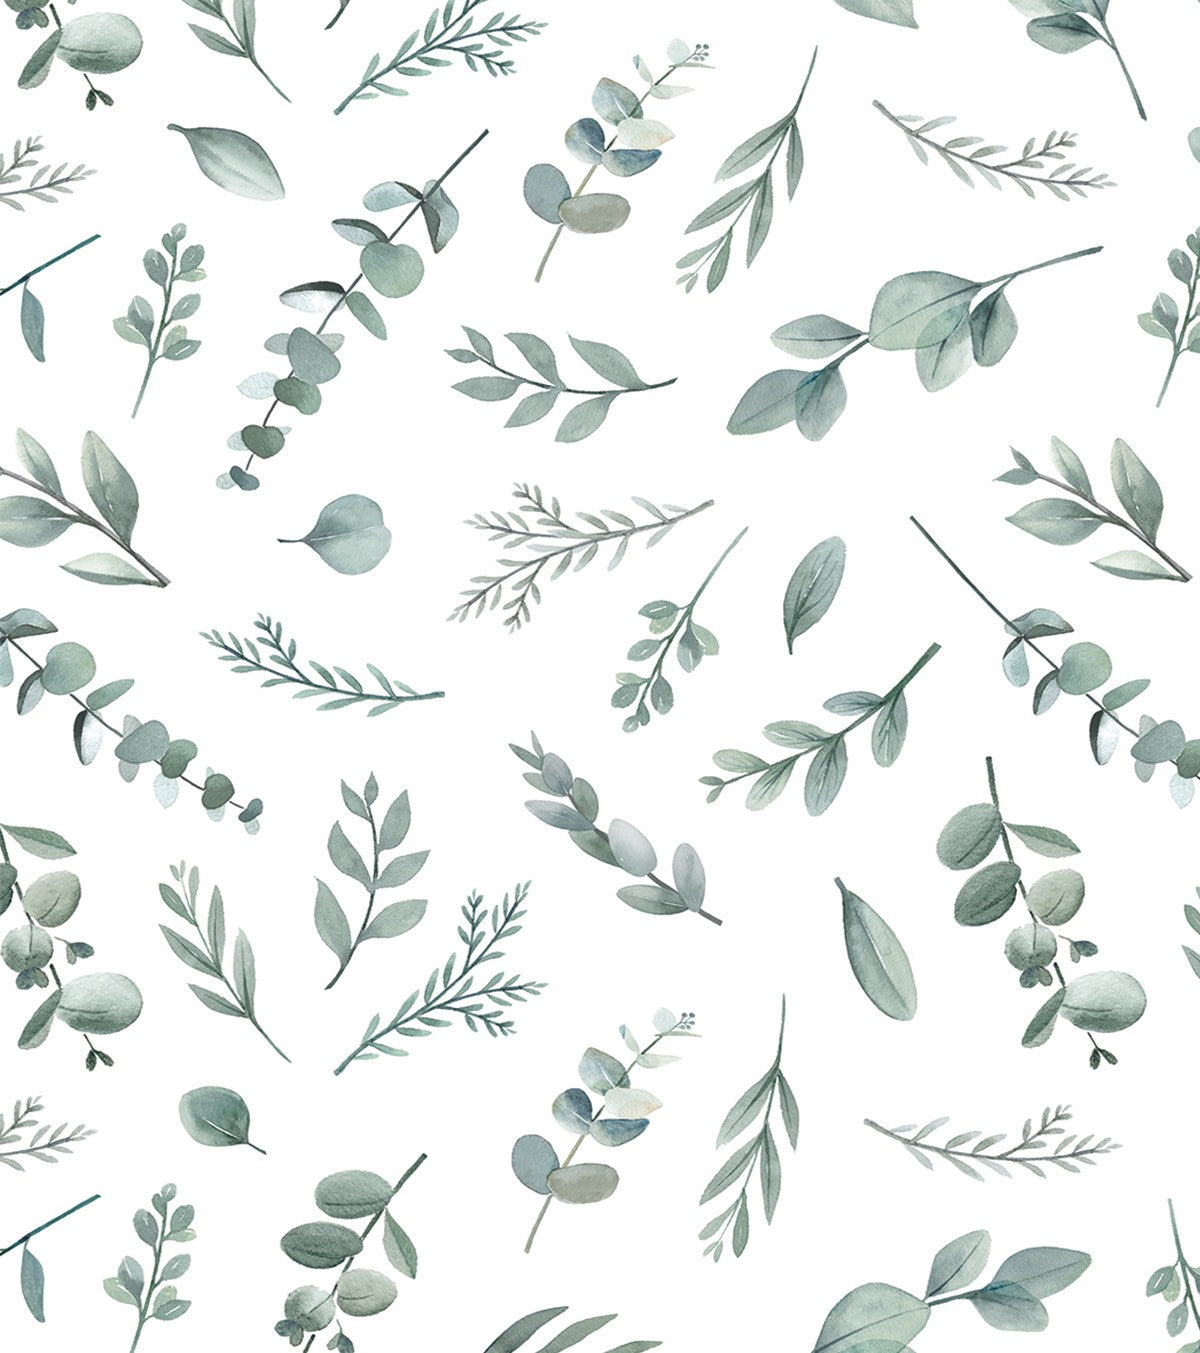 GREENERY - Papier peint enfant - Motif feuilles d'eucalyptus